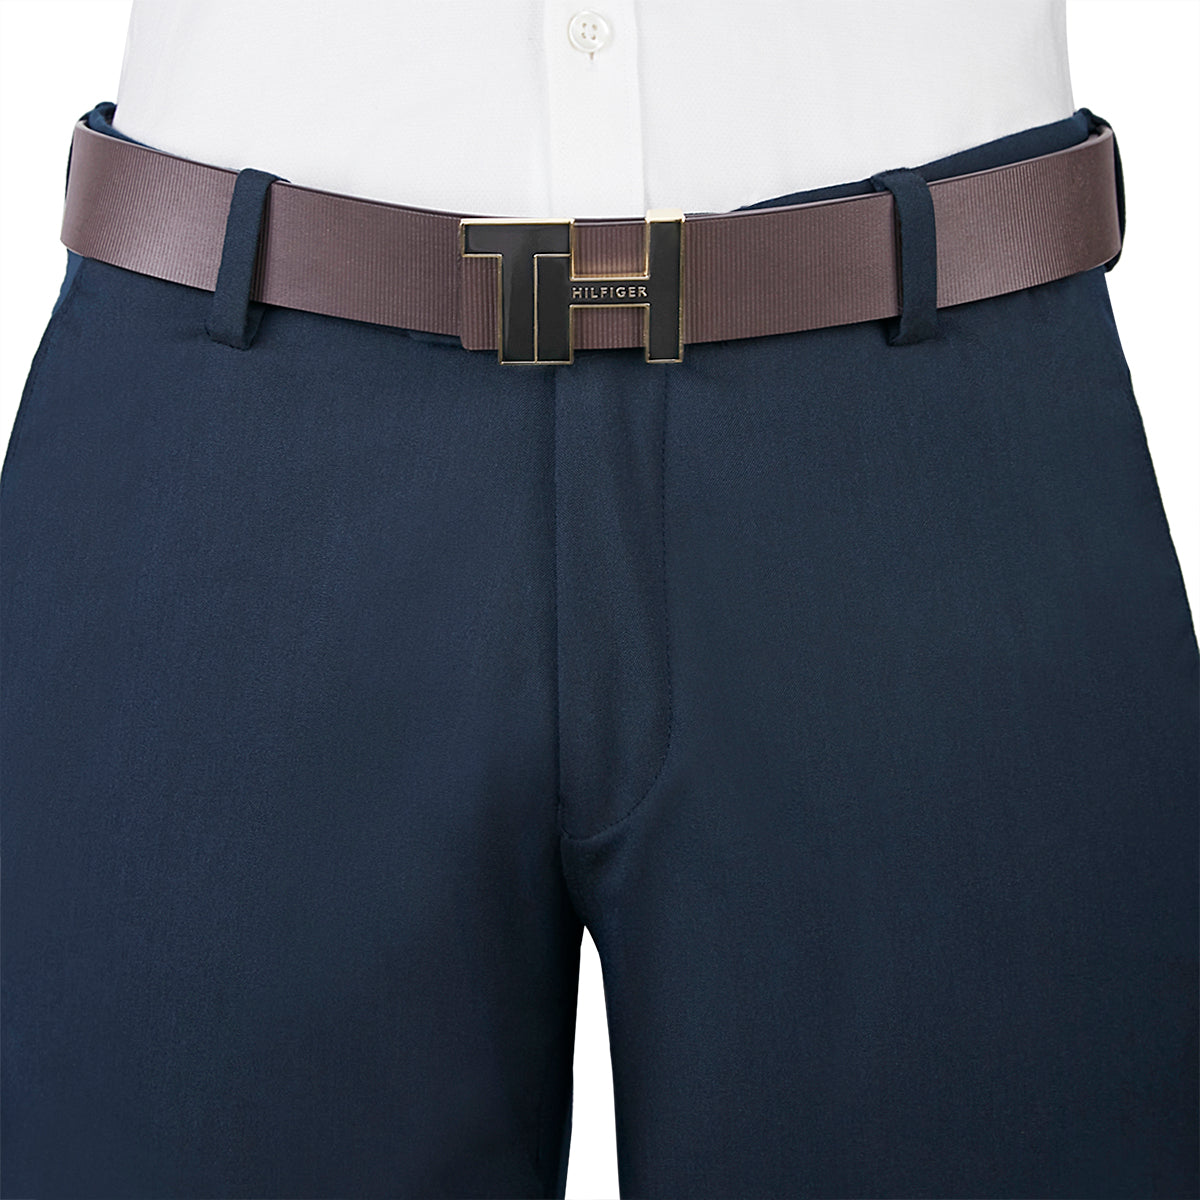 Tommy Hilfiger Struer Men's Reversible Leather Belt-Brown